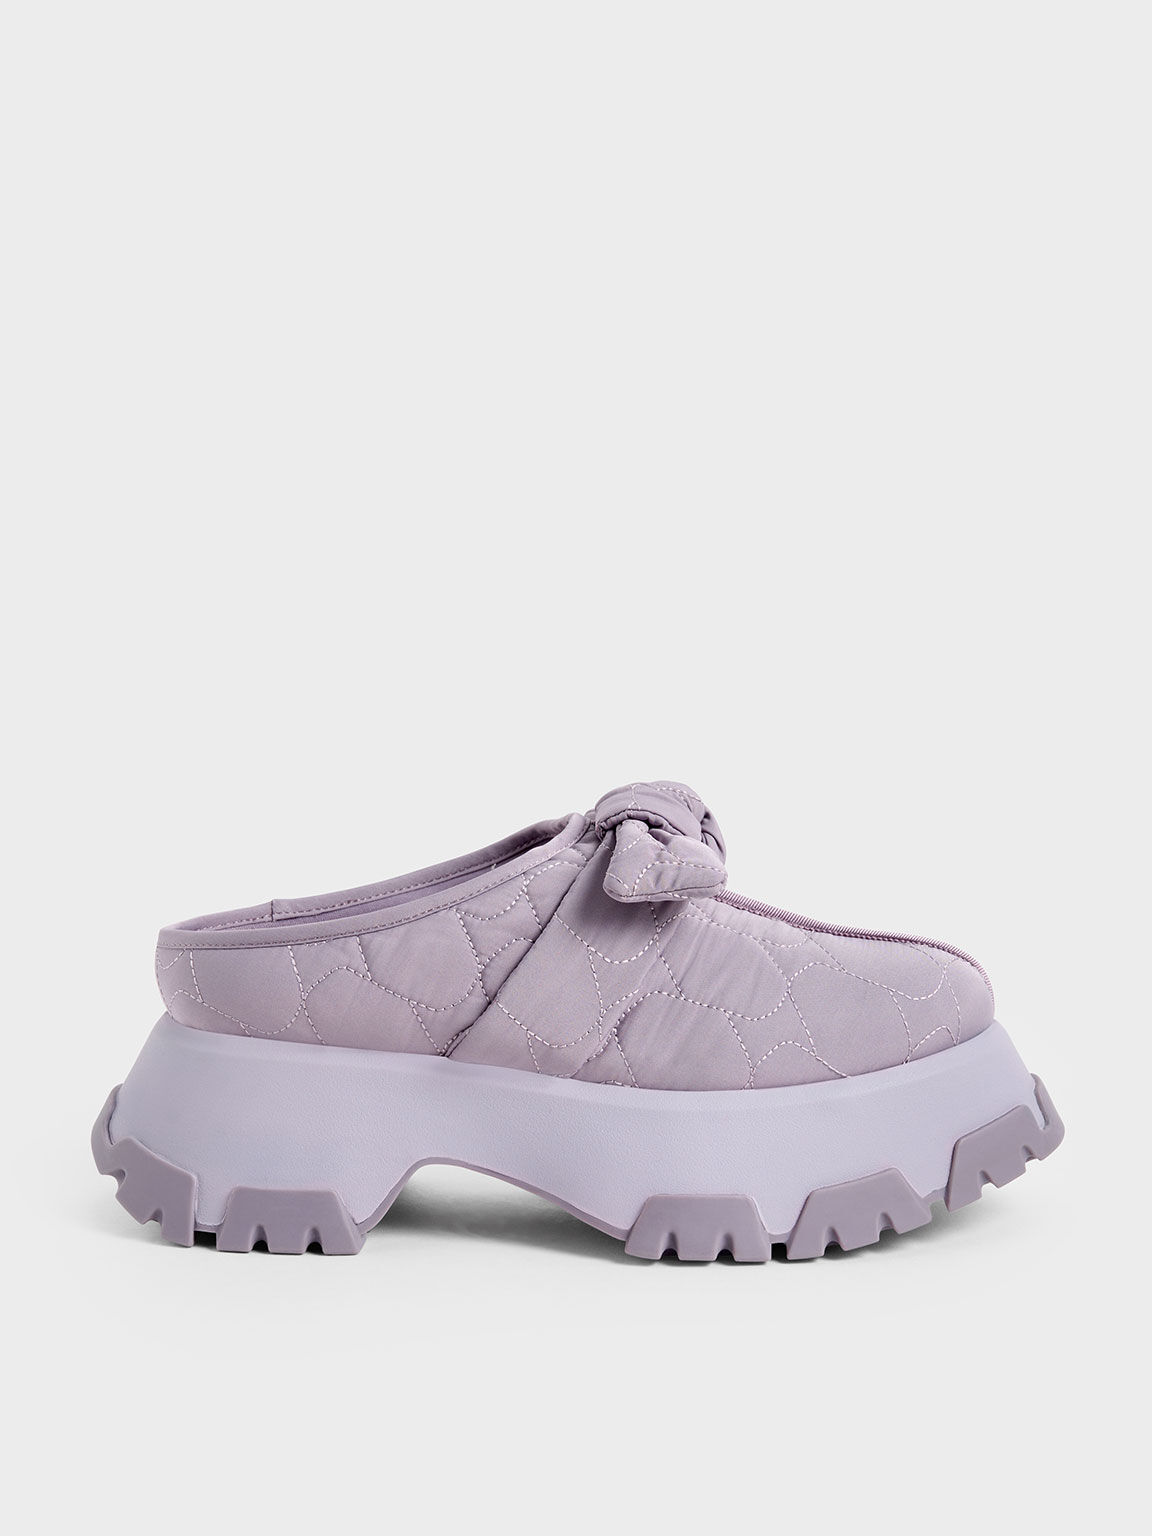 澎澎衍縫扭結穆勒鞋, 紫丁香色, hi-res